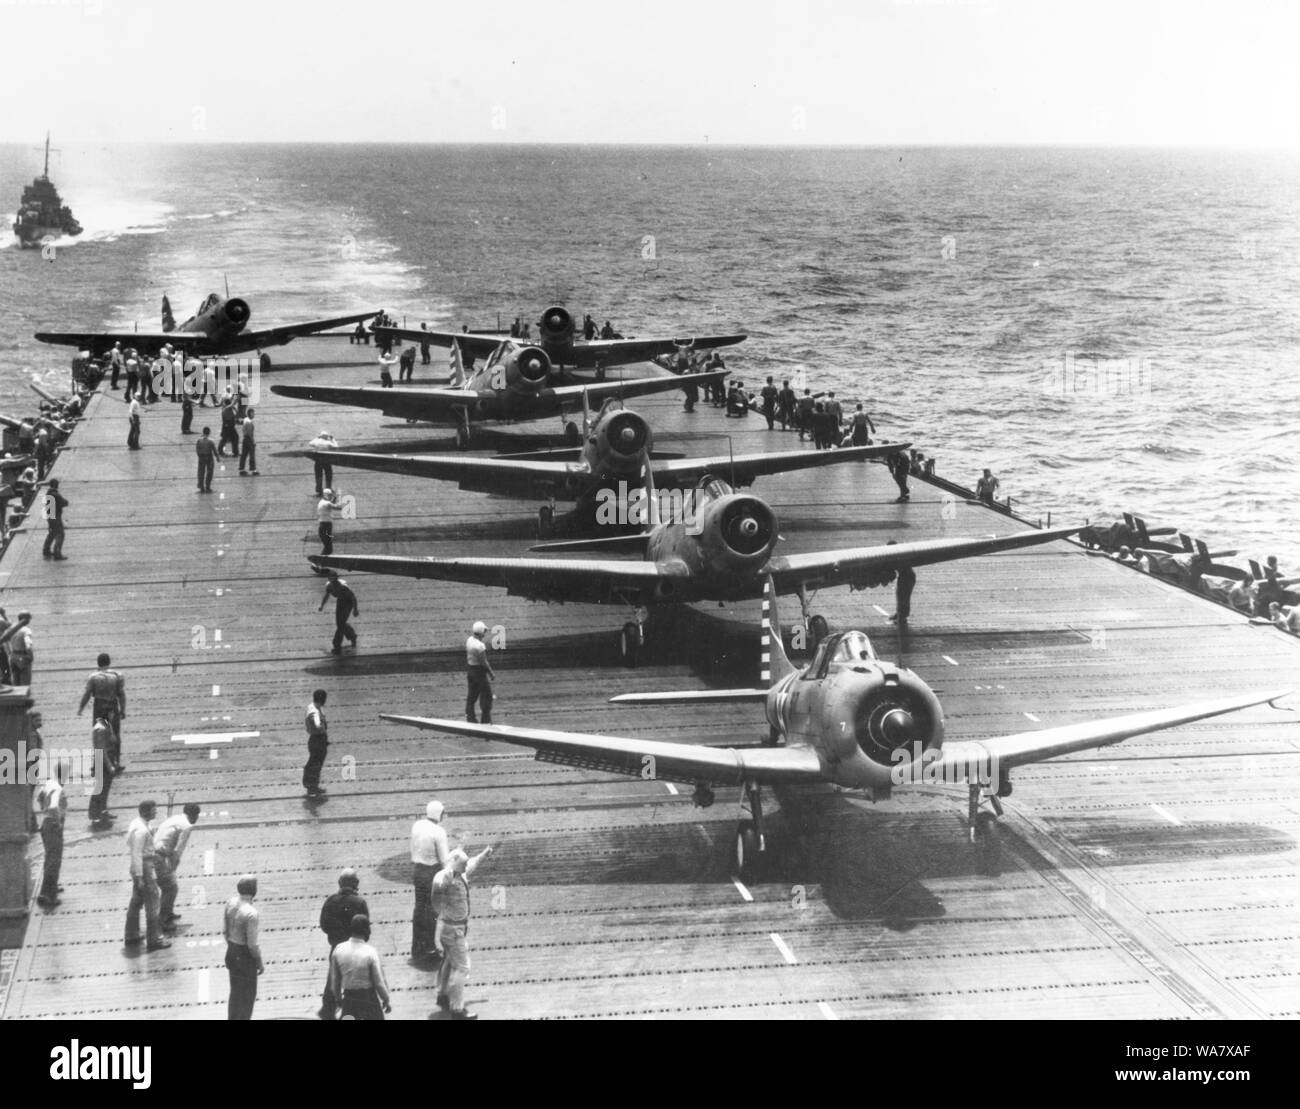 SBD intrépido scout-bombardero y cinco TBD-1 aviones torpedo devastador se preparan para despegar desde el USS Enterprise (CV-6) portaaviones durante las operaciones en la zona del Pacífico Sur, 1942 Foto de stock